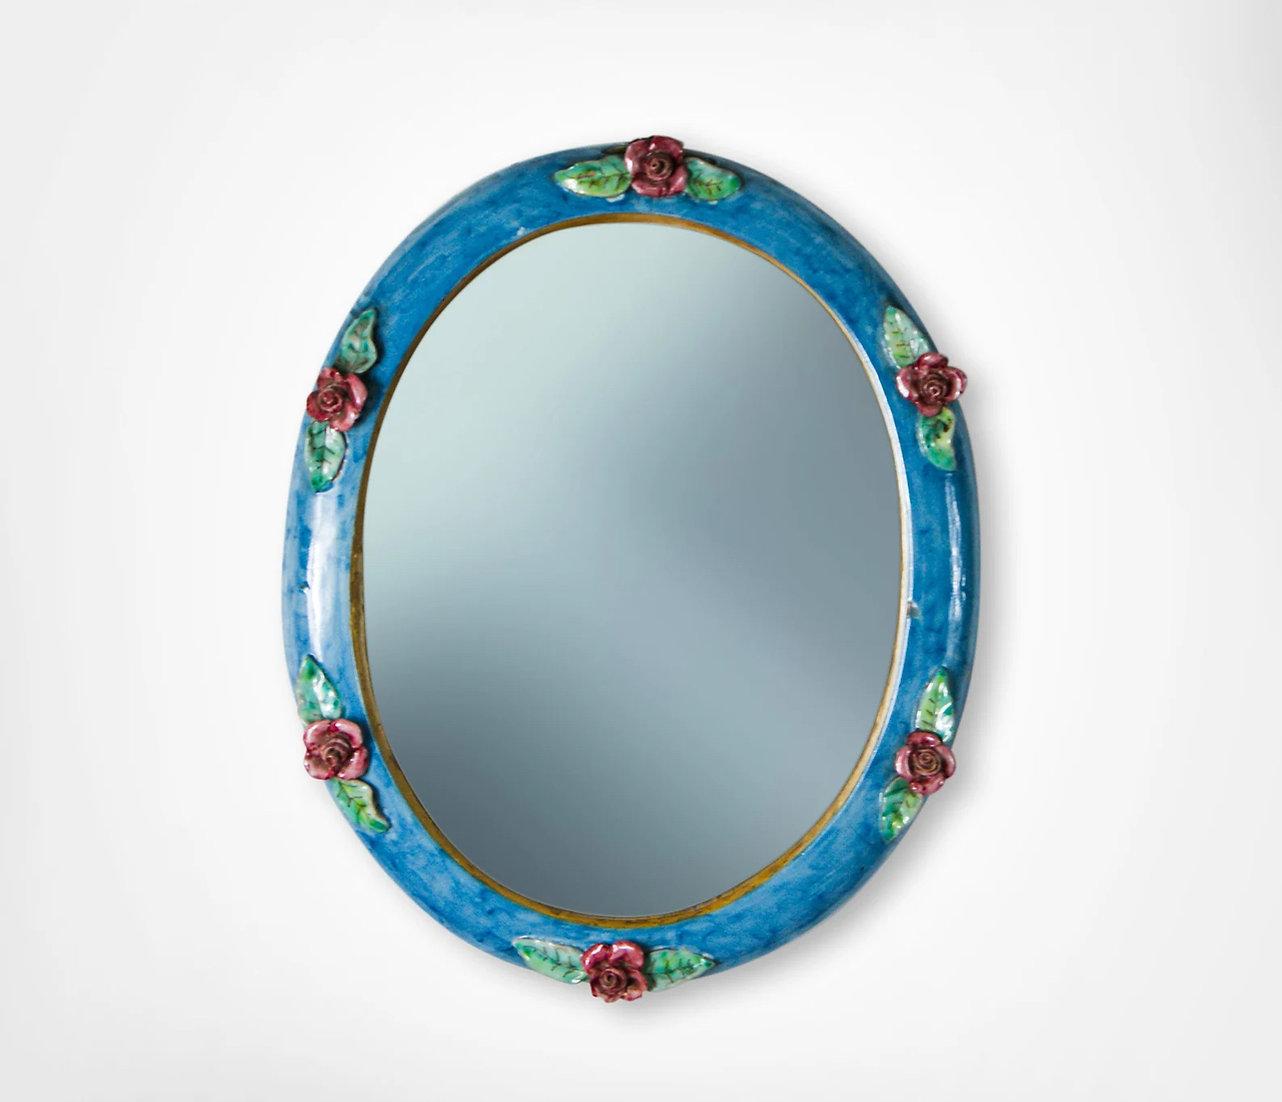 Attrayant miroir mural en céramique émaillée par C.A.S Vietri Italie, vers les années 1950.
Ravissant miroir mural de forme ovale avec bordure en céramique émaillée bleu vif.
Décoré avec des roses rouges appliquées et du feuillage...
Miroir très